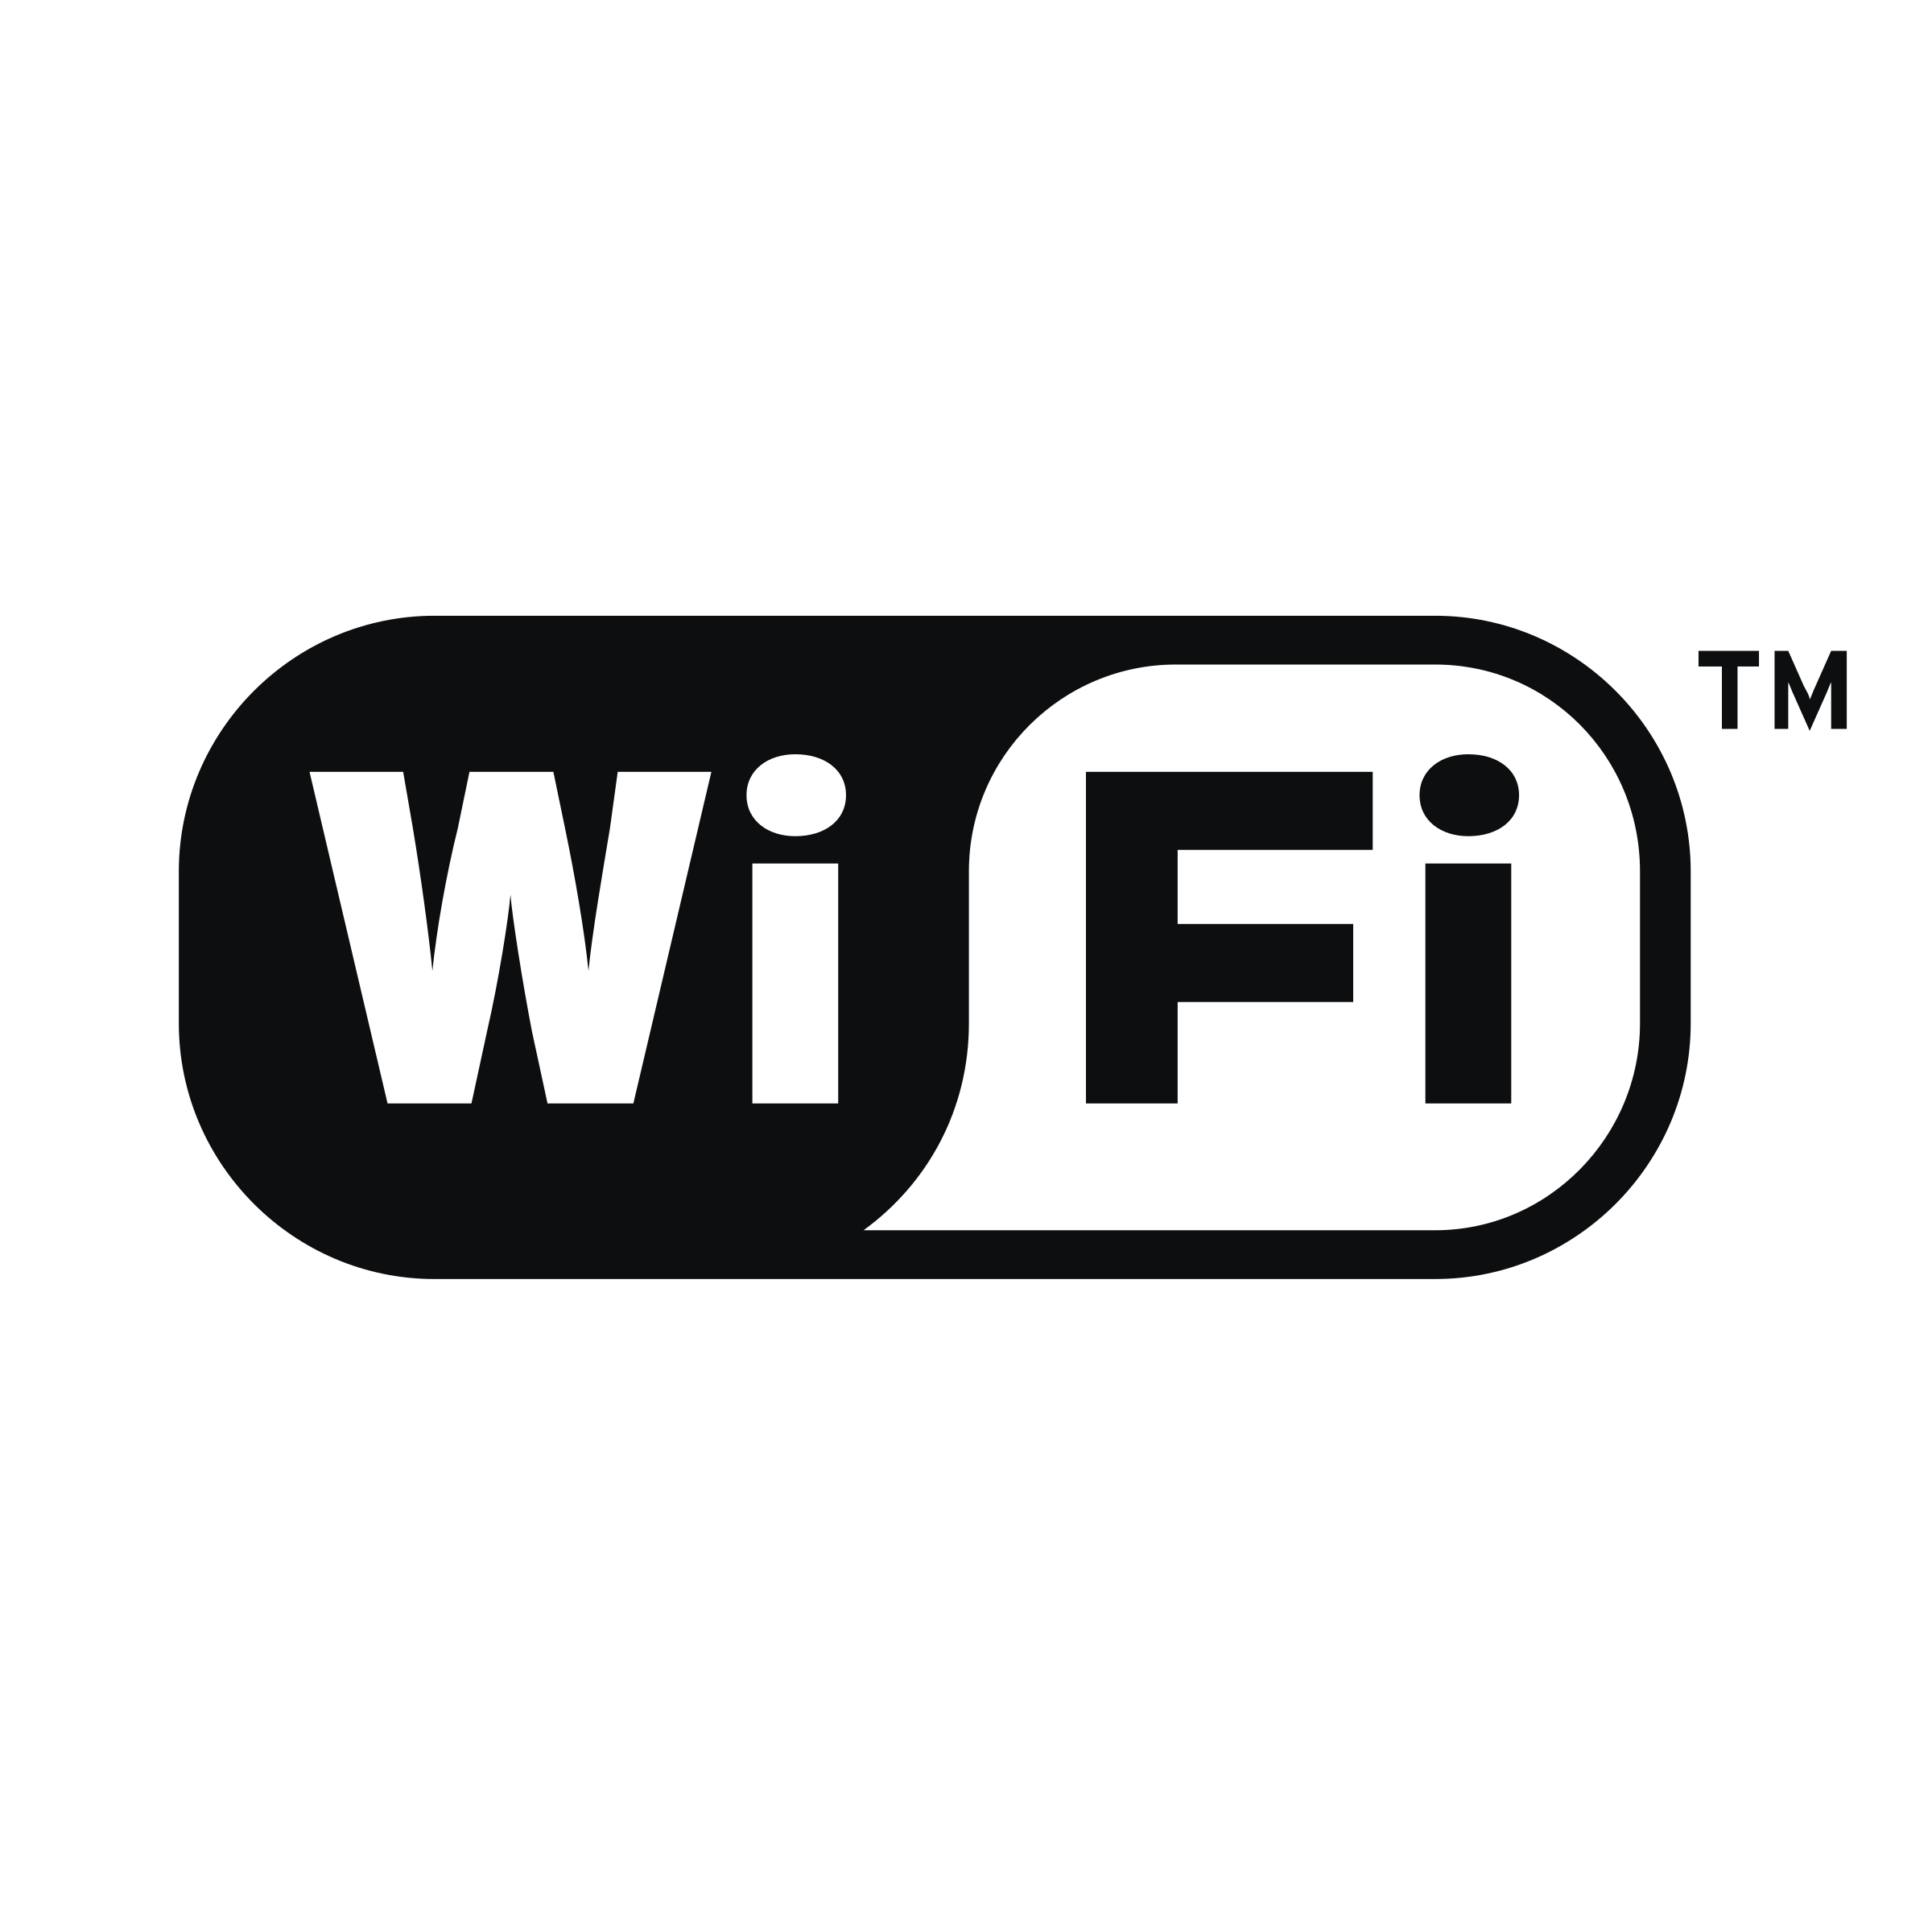 Immagine Trasparente del logo del logo del wifi nero